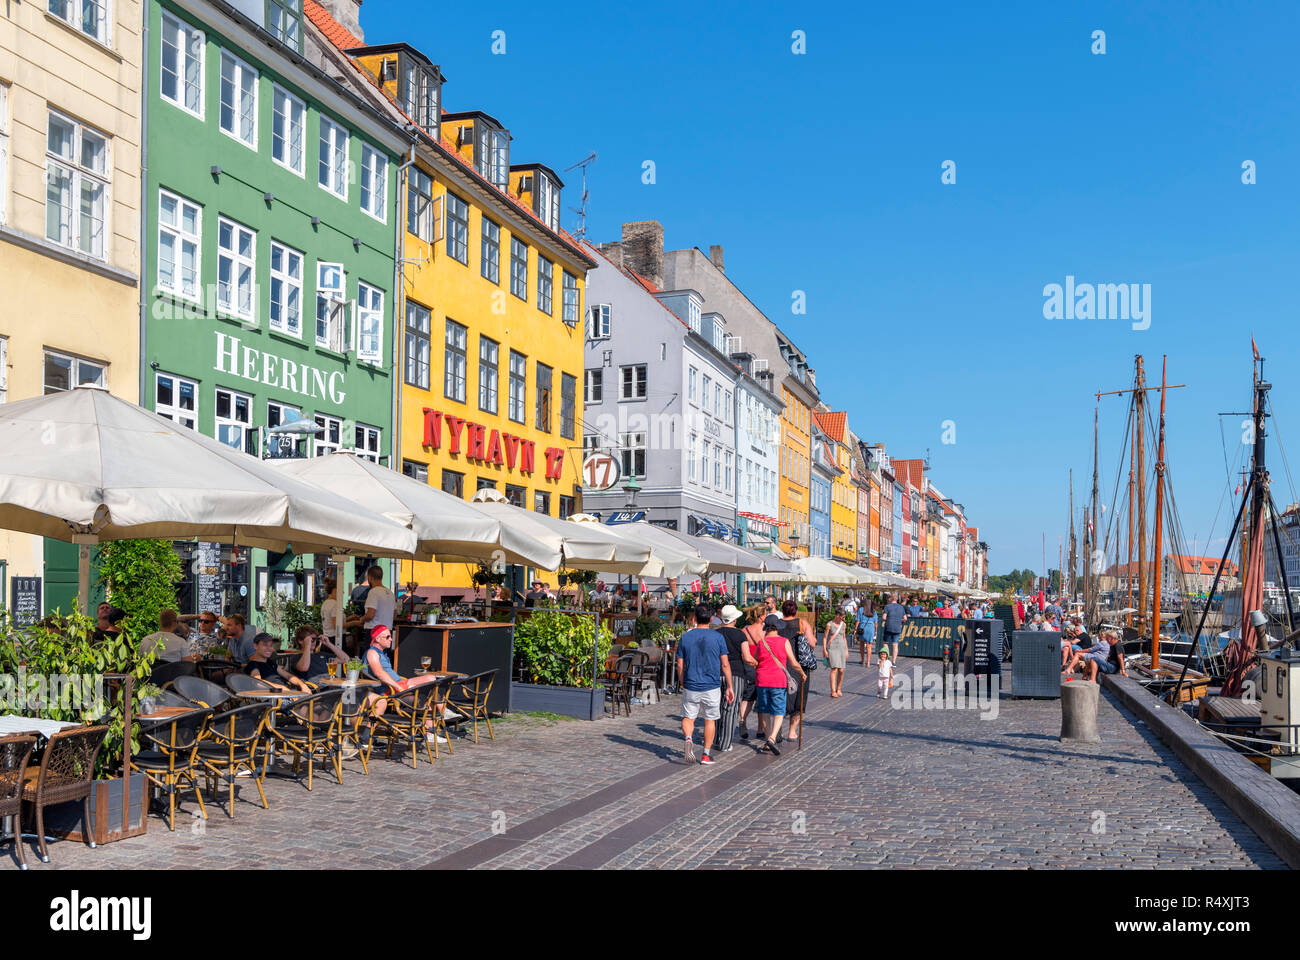 Nyhavn, Copenhagen. Cafes, bars and restaurants along the historic Nyhavn canal, Copenhagen, Denmark Stock Photo